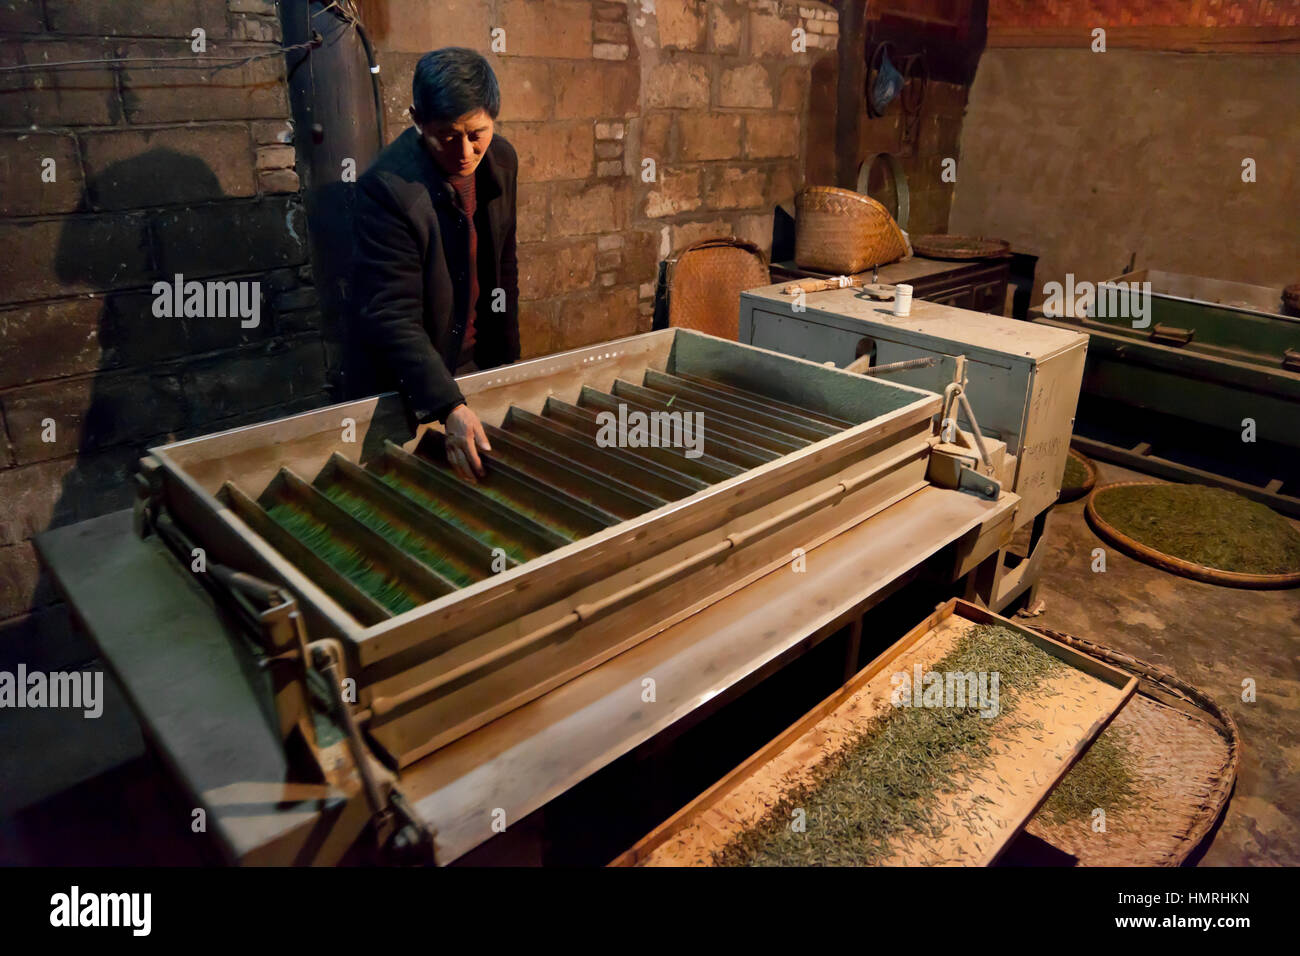 Un homme singes tendres bourgeons de thé dans les bacs de la lunette jiggling machine électrique pour préparer le thé vert pour l'emballage et la vente en Chine. Banque D'Images